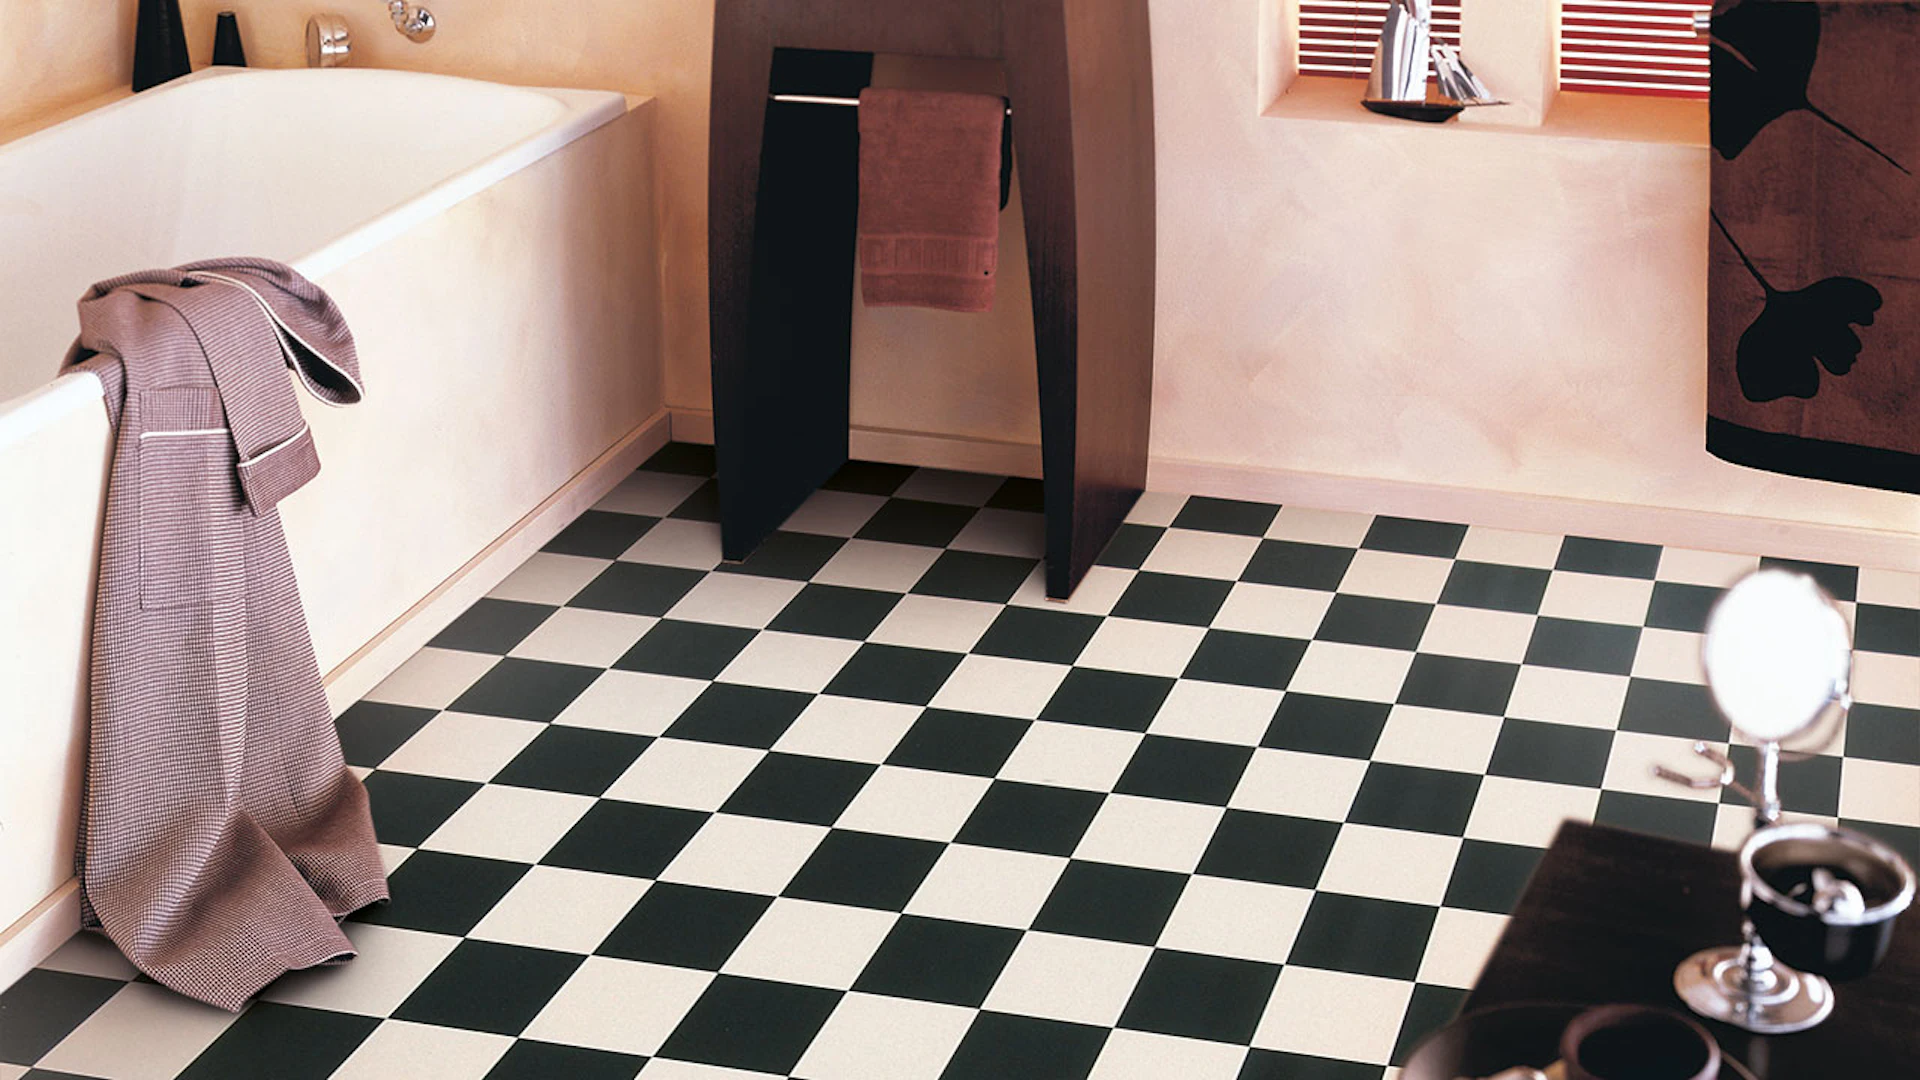 Gerflor PVC Floor - CLEVER/FOCUS DAMIER BLACK & WHITE 2m x 35m - 0115